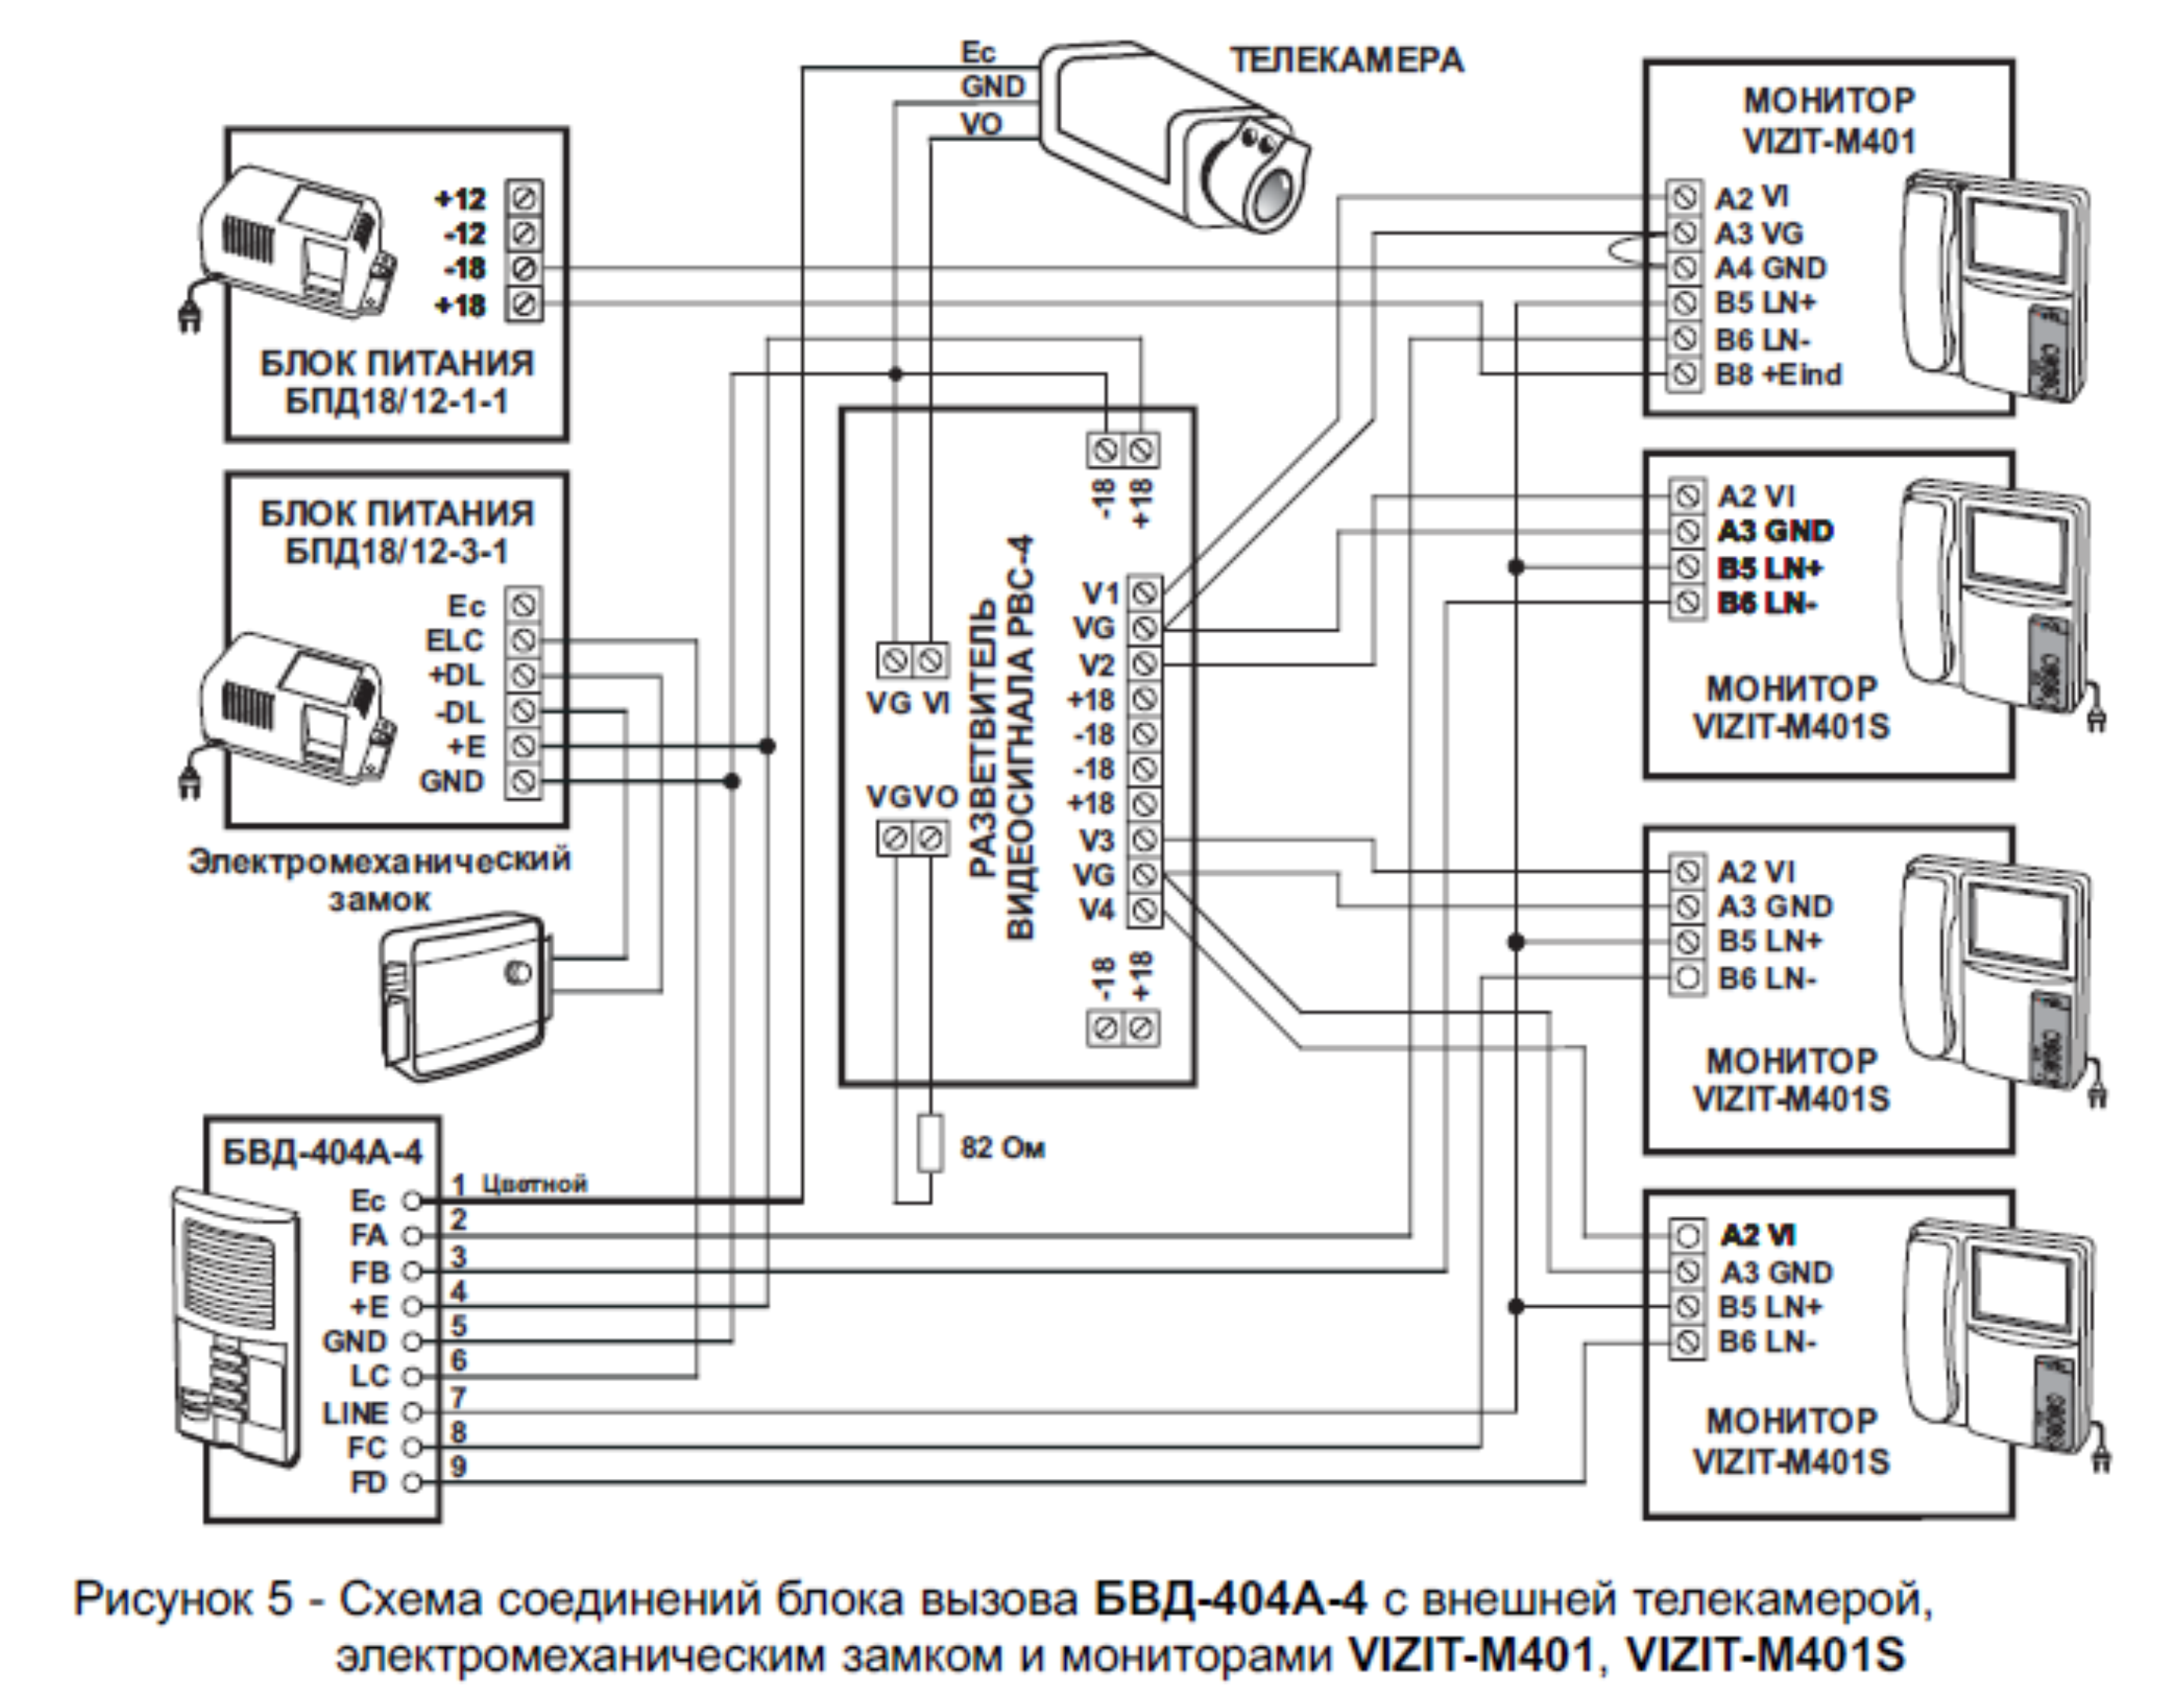 Рисунок 5 - Схема соединений бл ок а вызова БВД-404А-4 с внешней телекамерой,
электромеханическим замк ом и мониторами VIZIT-M401, VIZIT-M401S